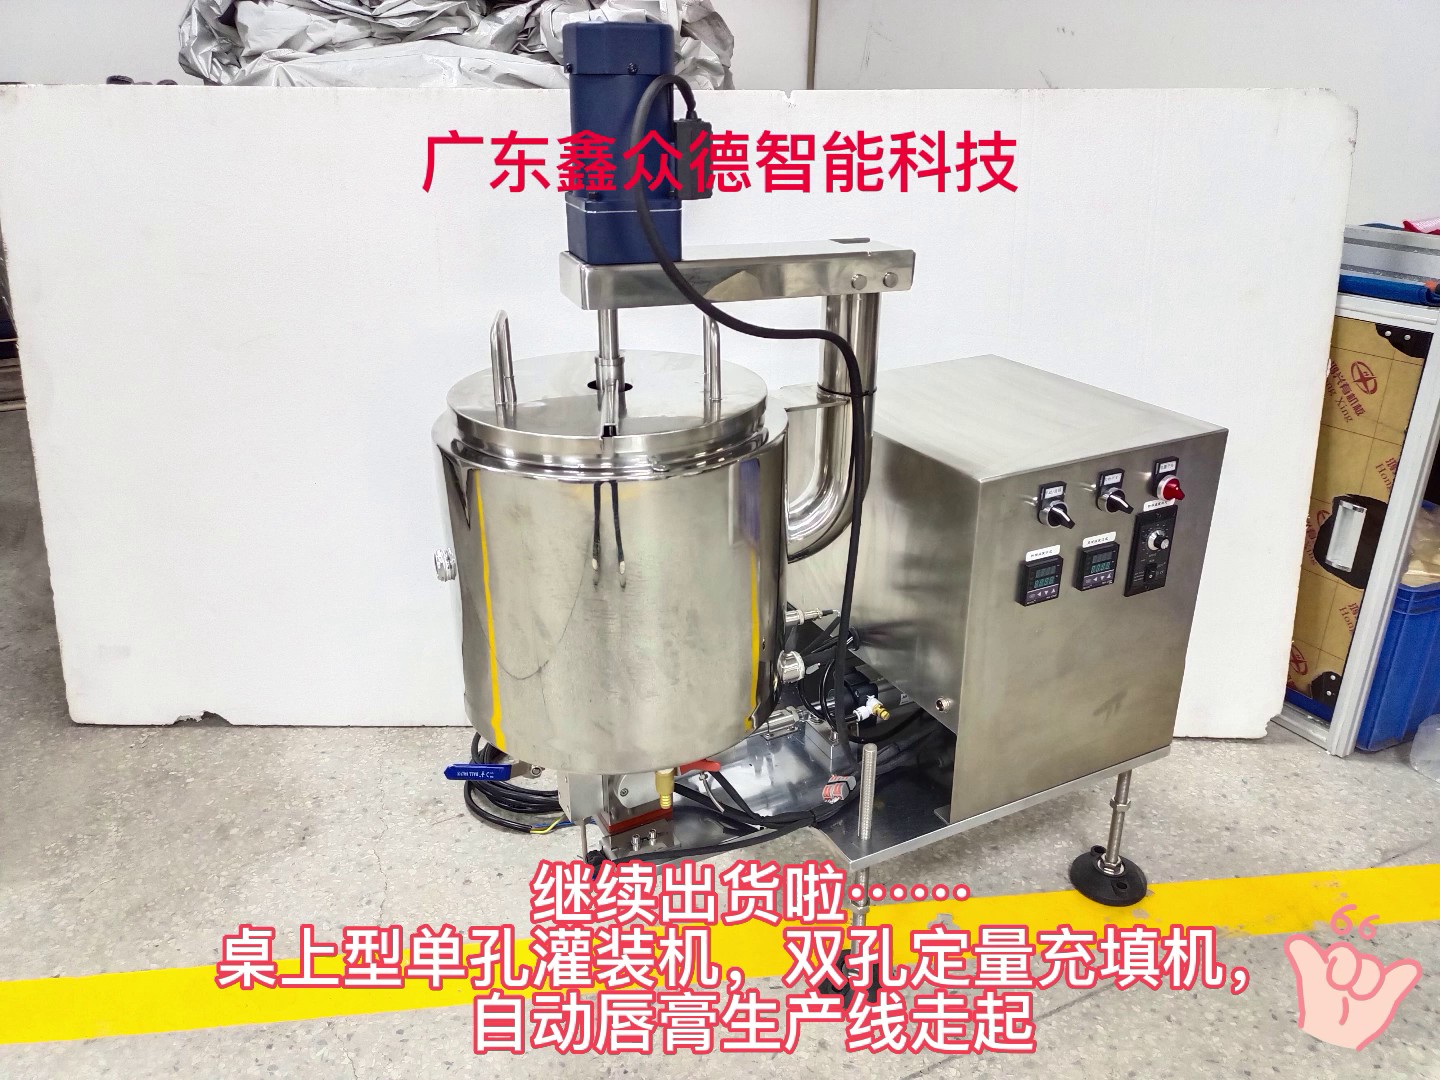 惠州自动化口红自动检测机,化妆品